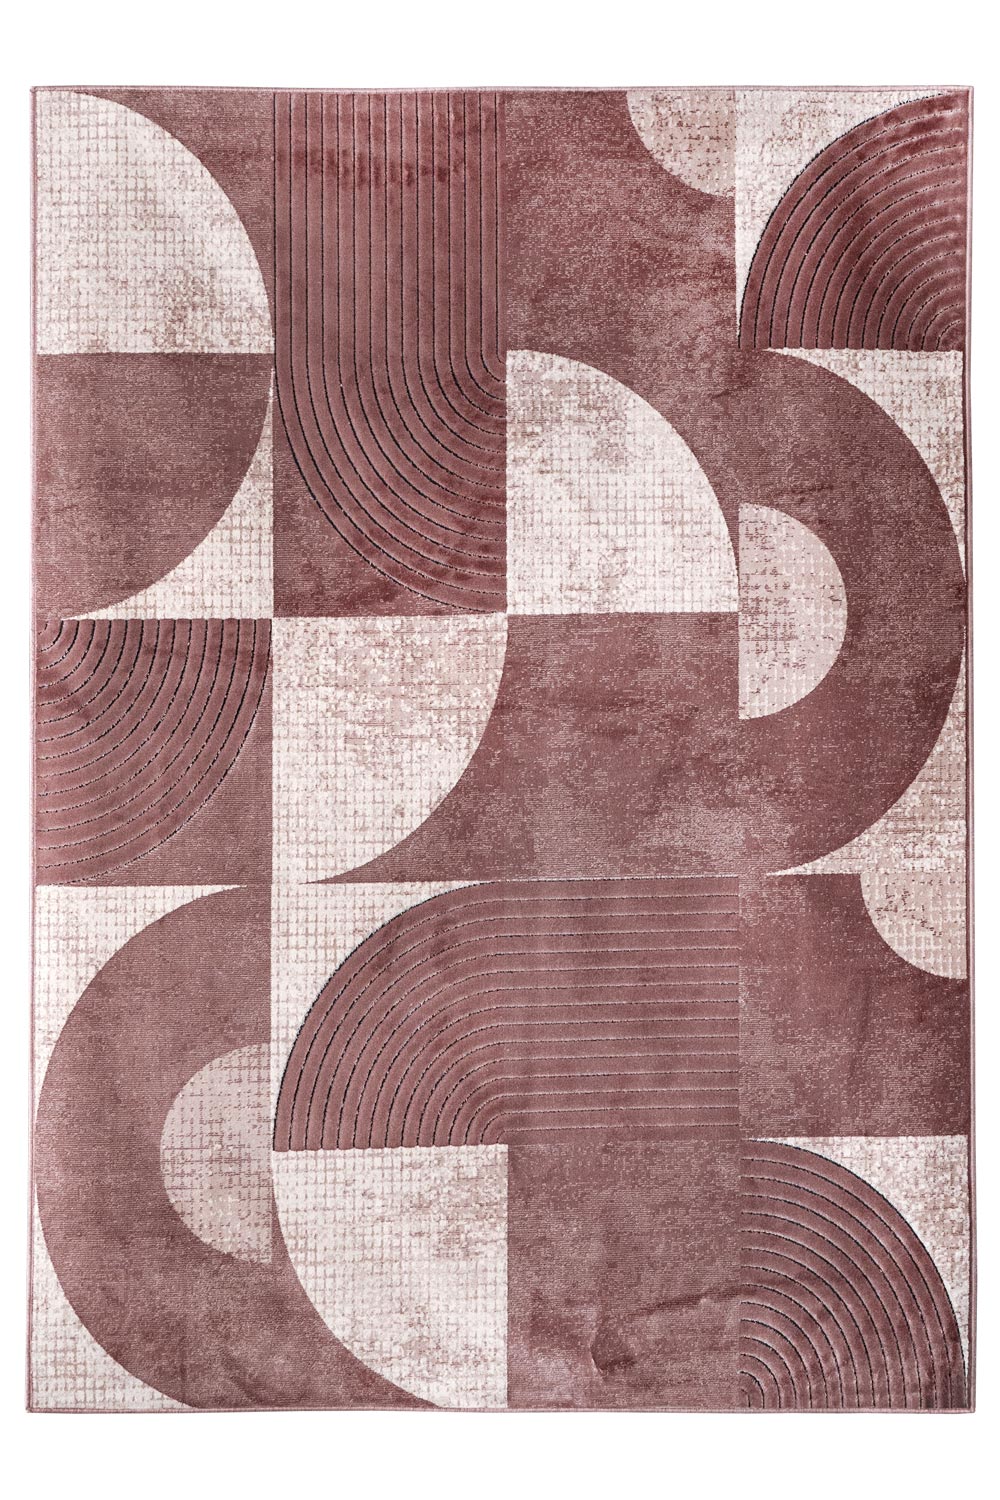 Kusový koberec GIRONA 2755/142 Peach 68x110 cm